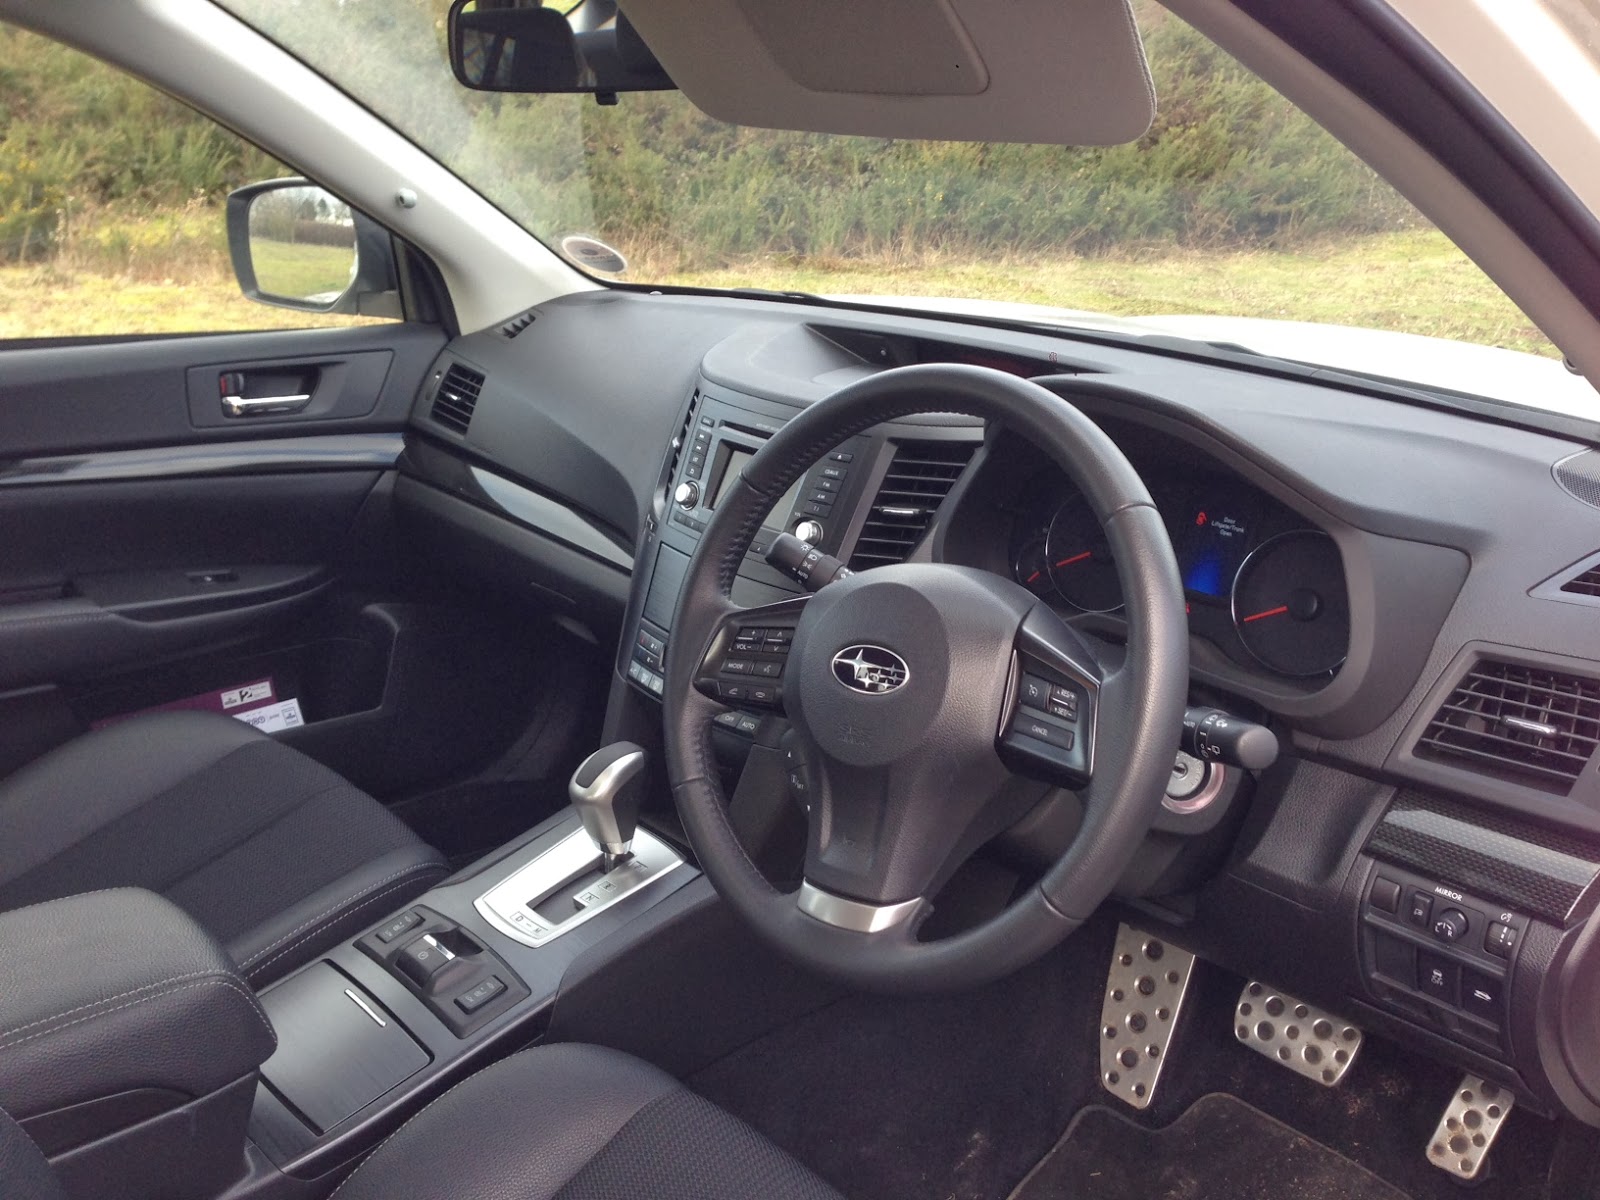 2014 Subaru Outback interior